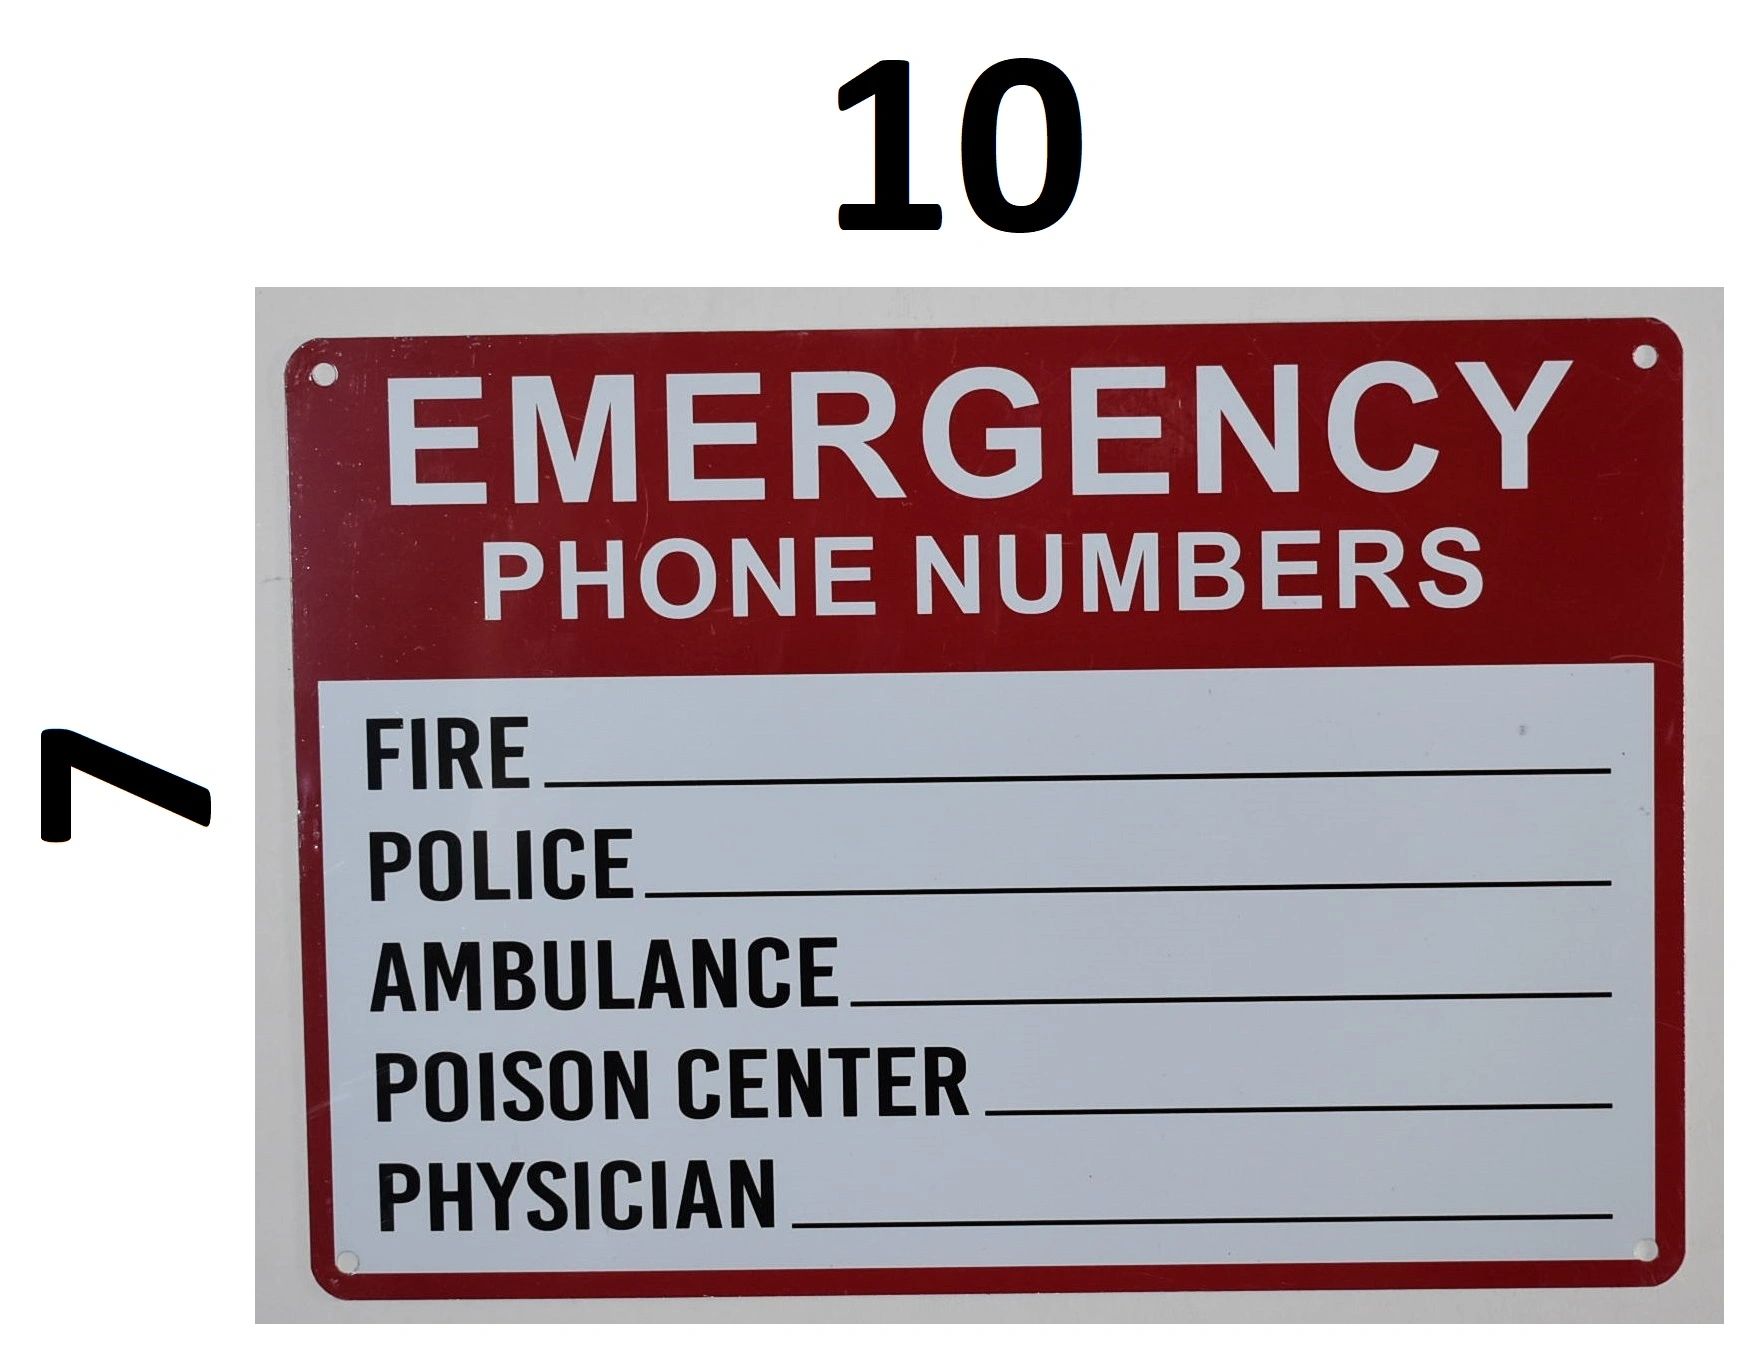  Emergency phone numbers